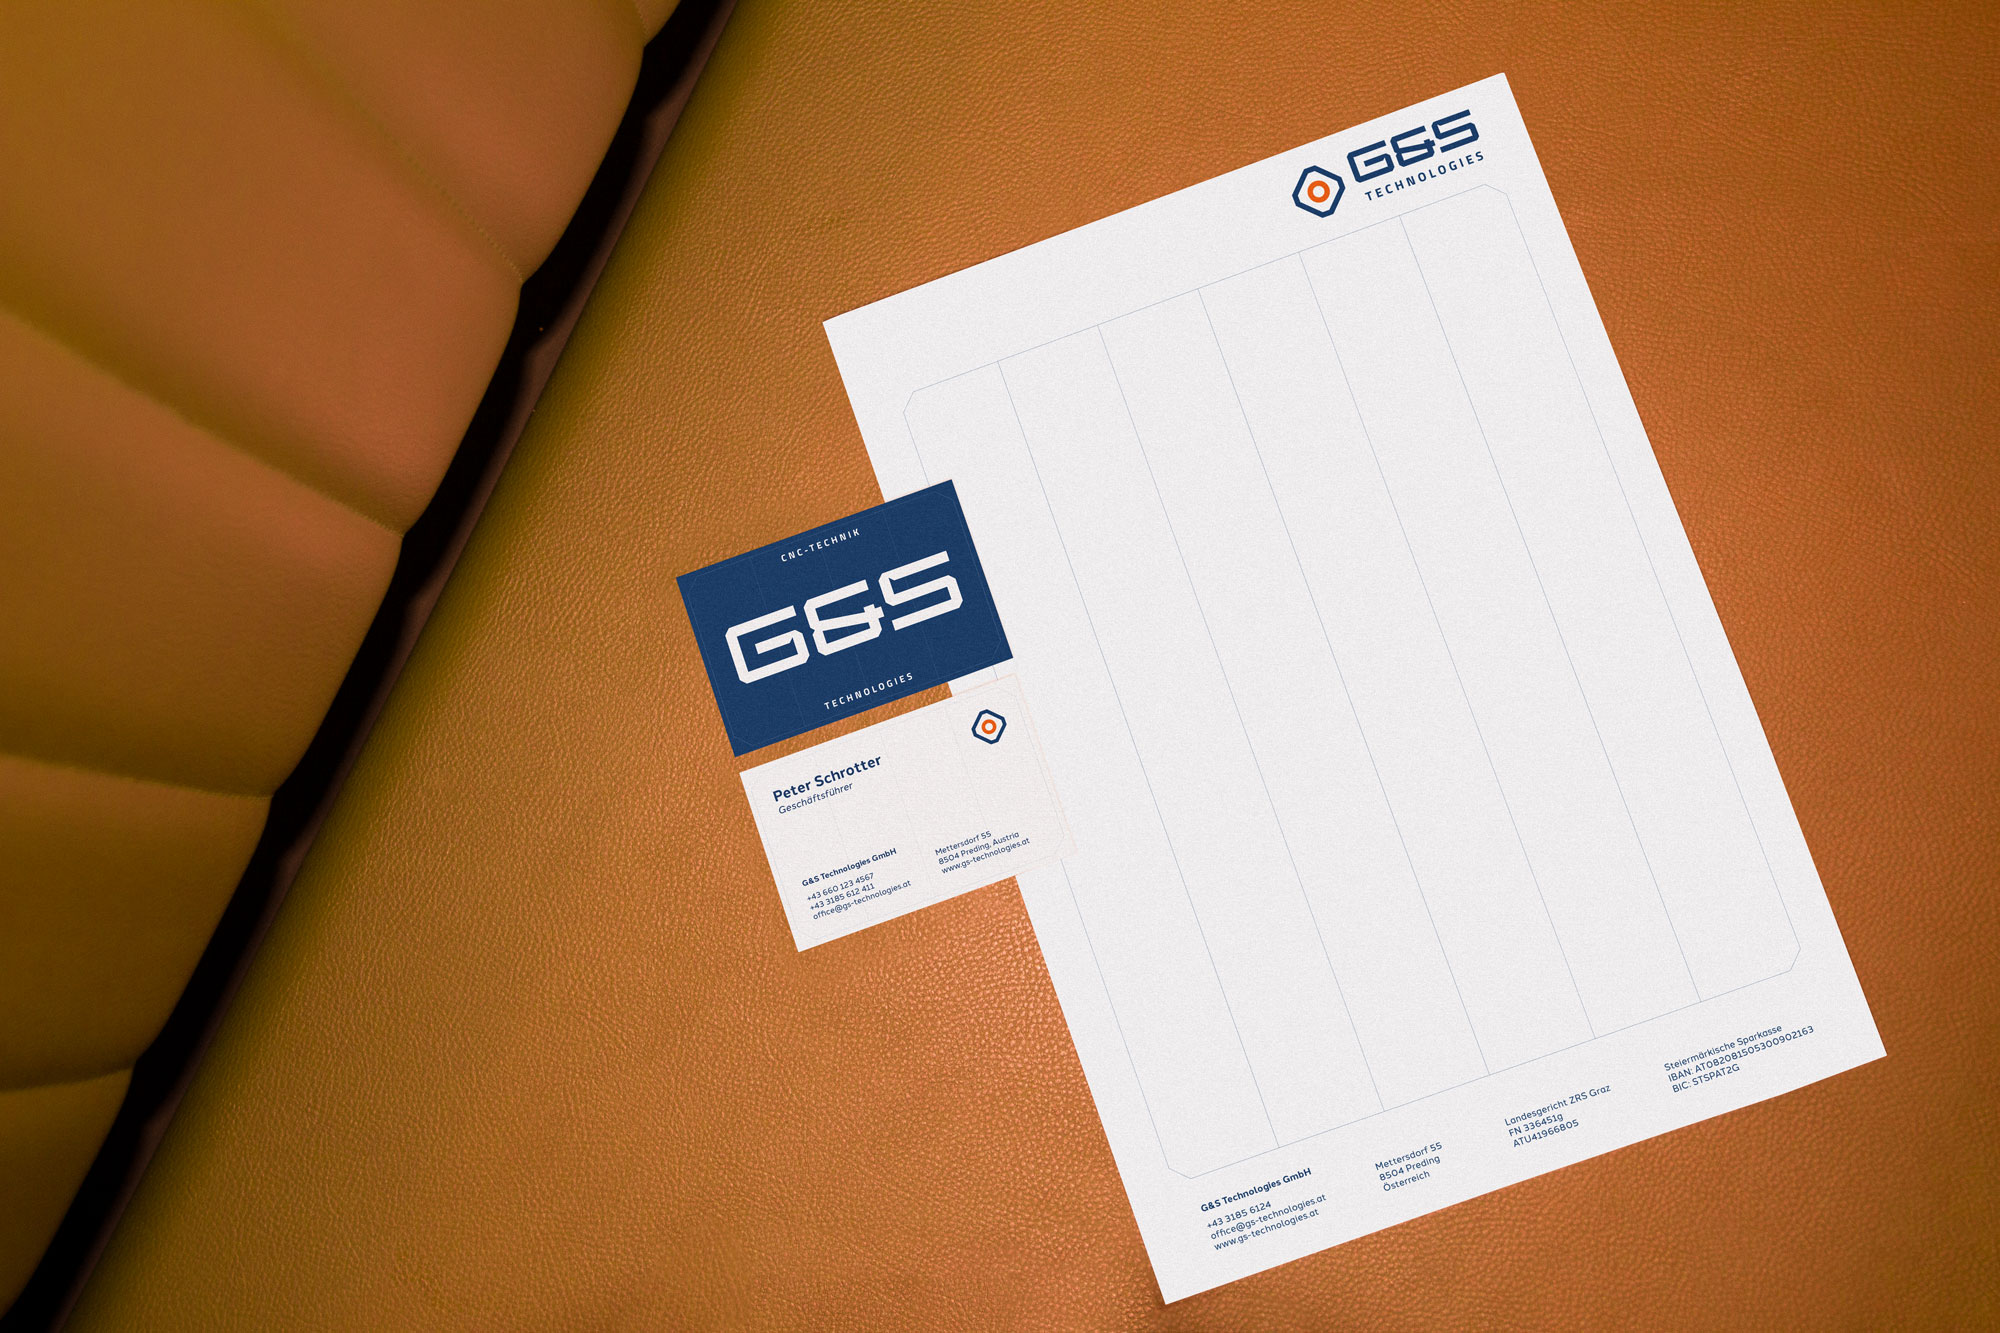 Eine Visitenkarte von G&S Technologies auf einem Tisch neben einem Stuhl.